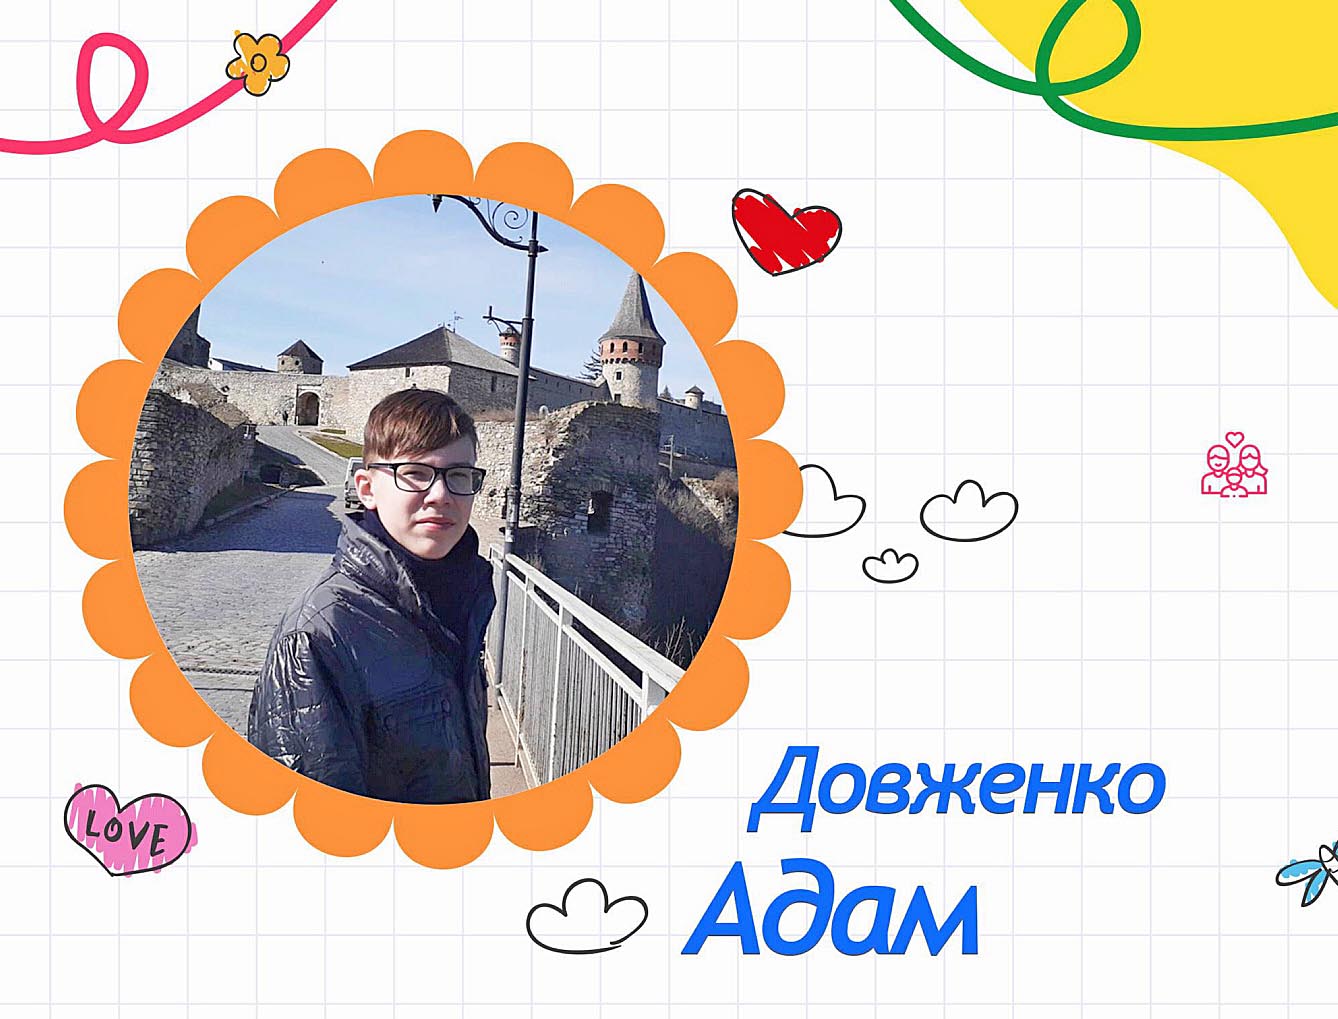 16-річний Адам Довженко із задоволенням вчиться у школі, бере активну участь у різних заходах, без нагадування допомагає мамі  і бабусі. А ще любить подорожувати!